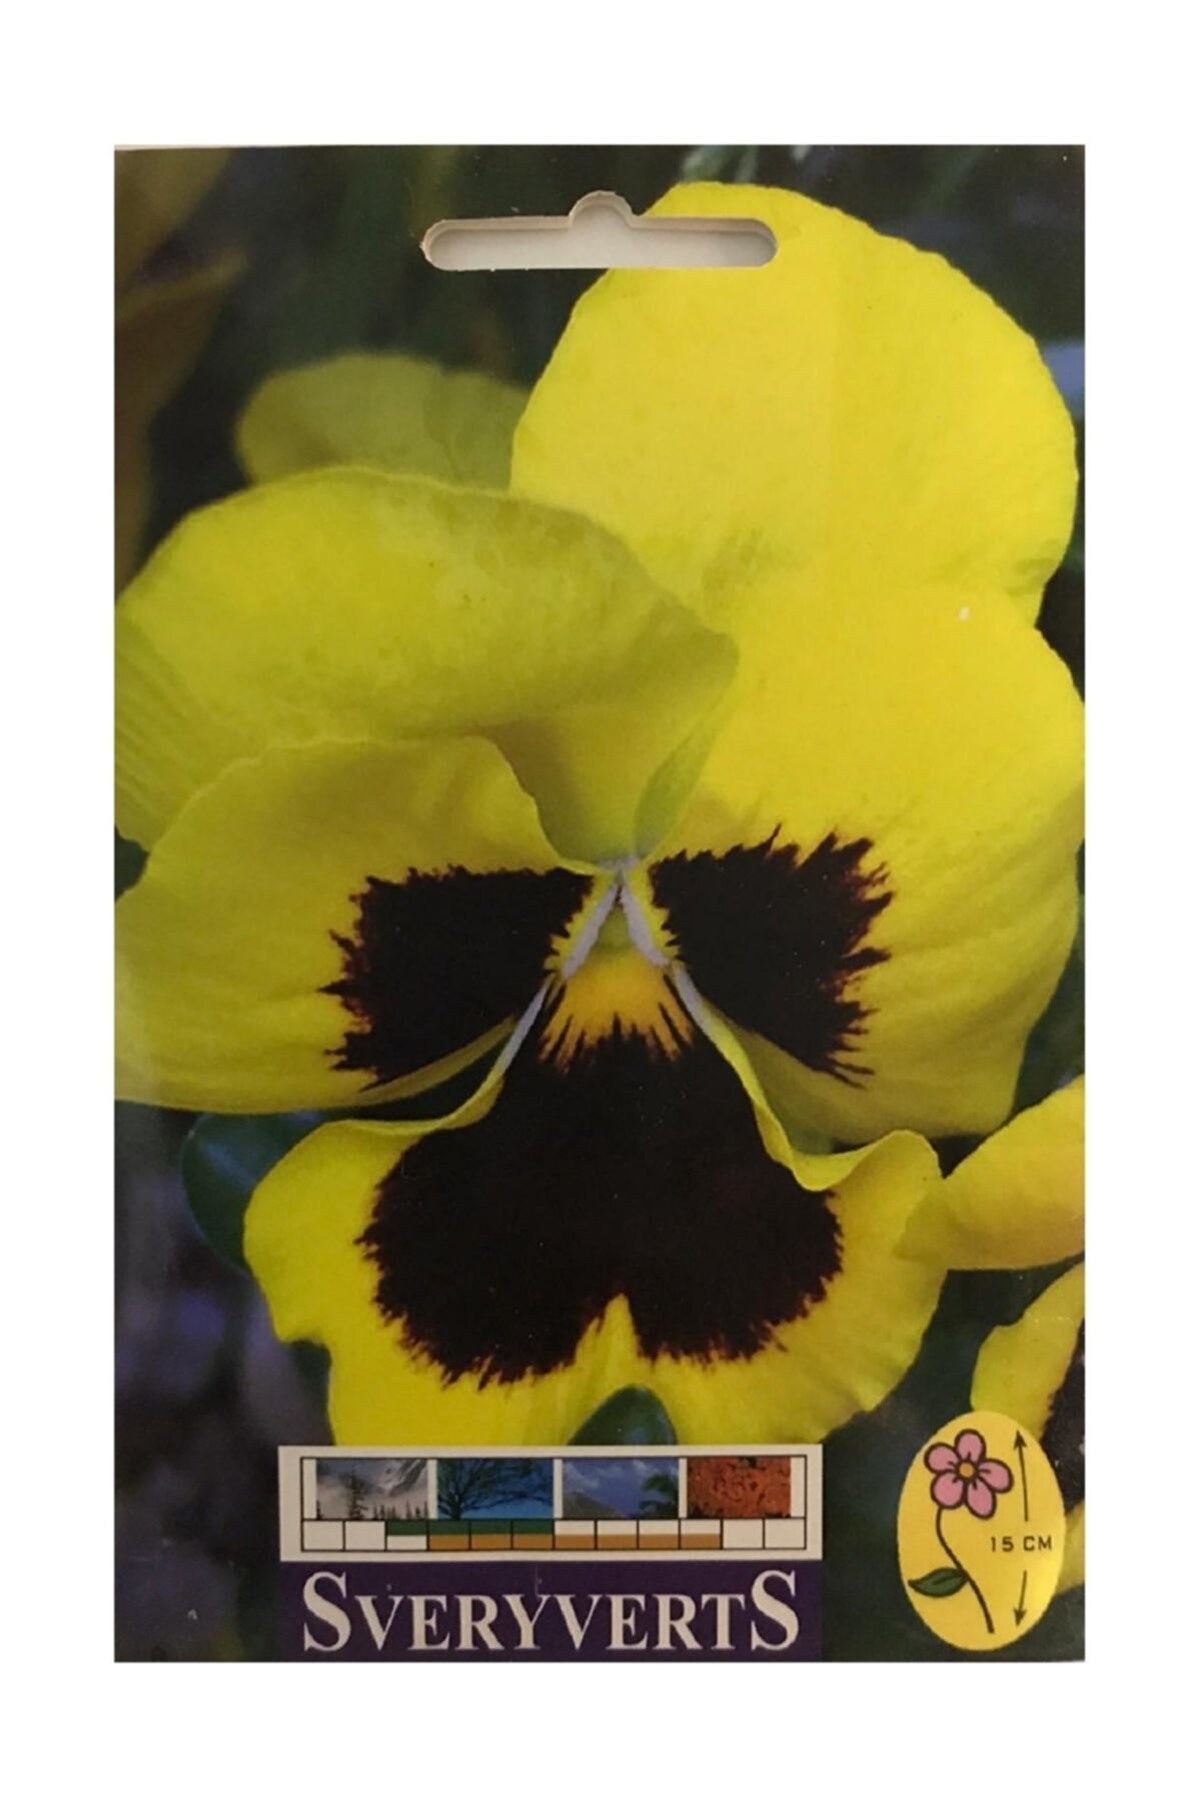 SVERYVERTS Sarı Menekşe Çiçeği Tohumu Paket